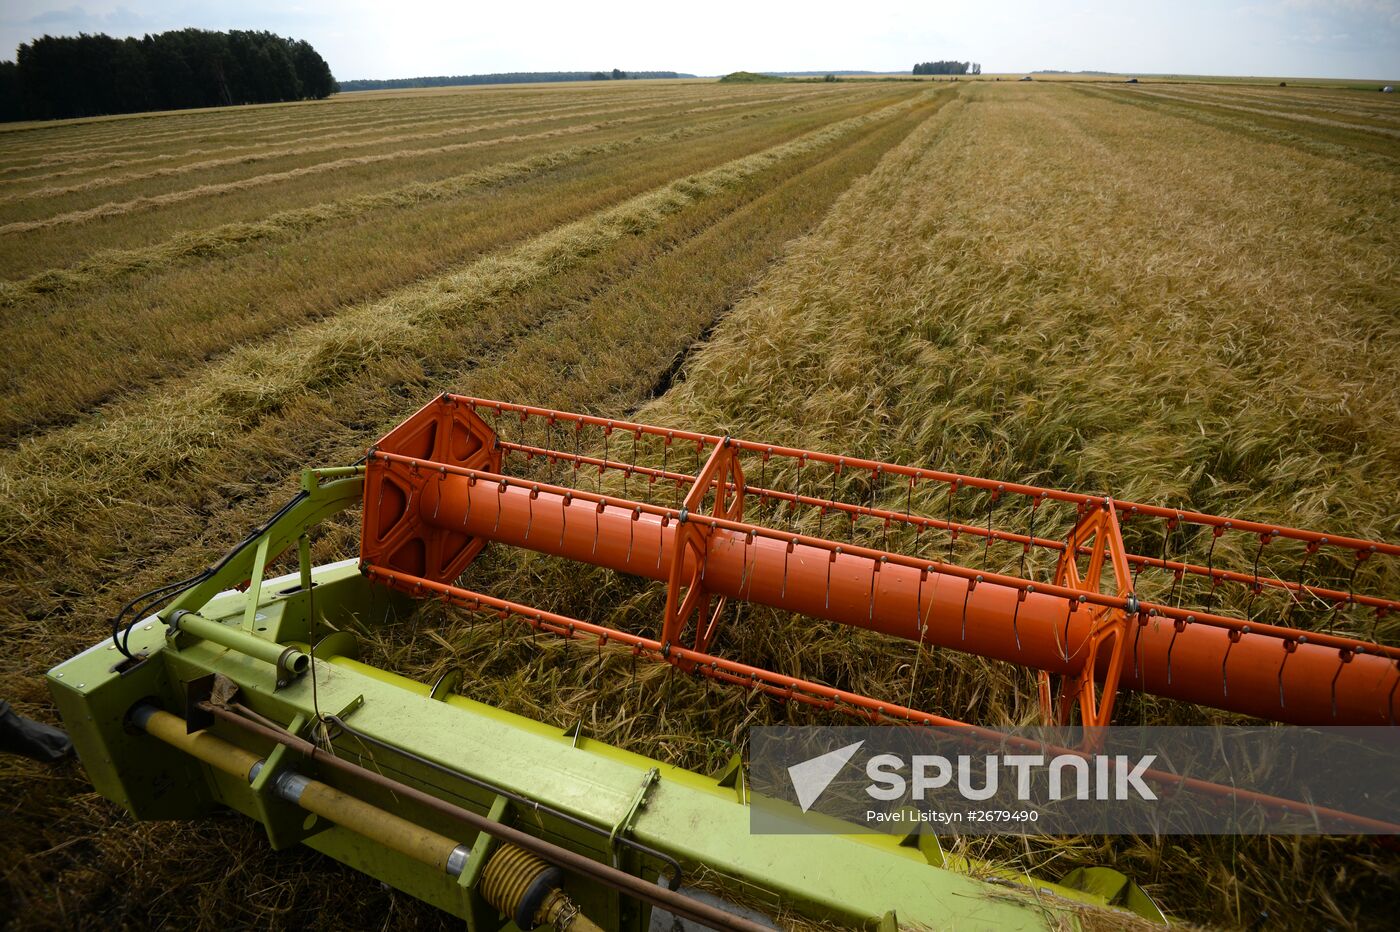 Crop harvesting in Sverdlovsk Region